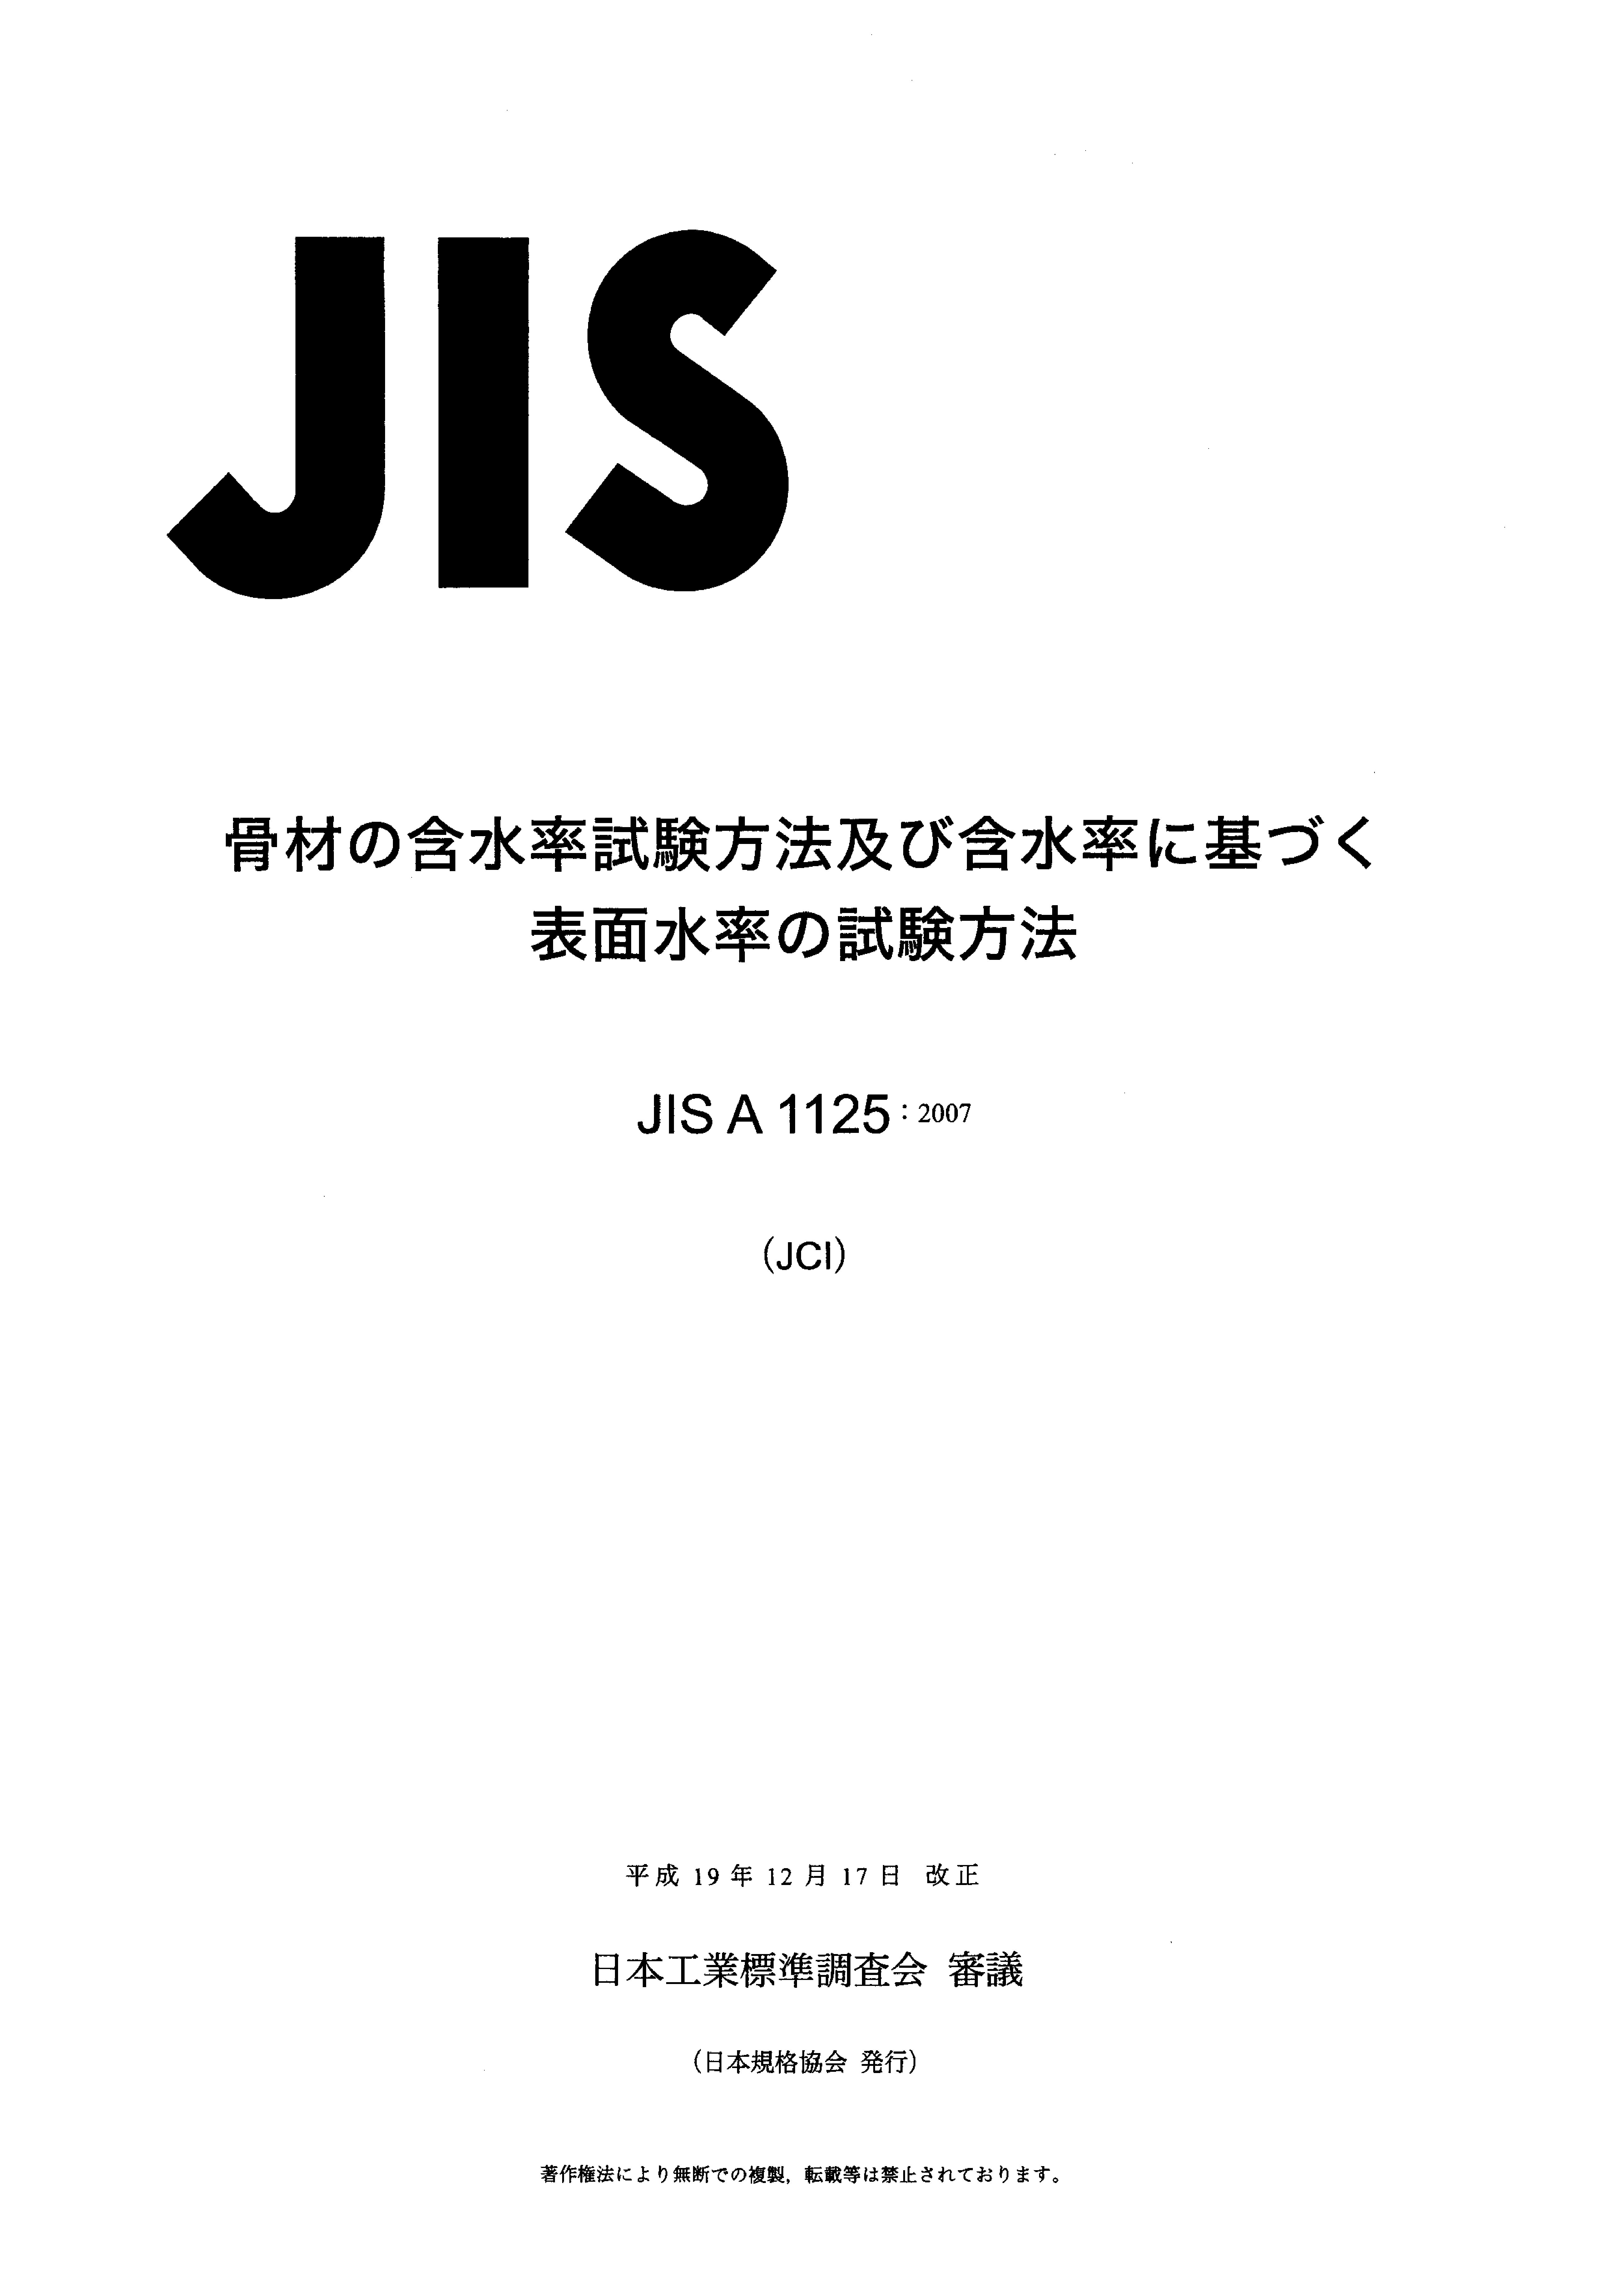 JIS A1125-2007